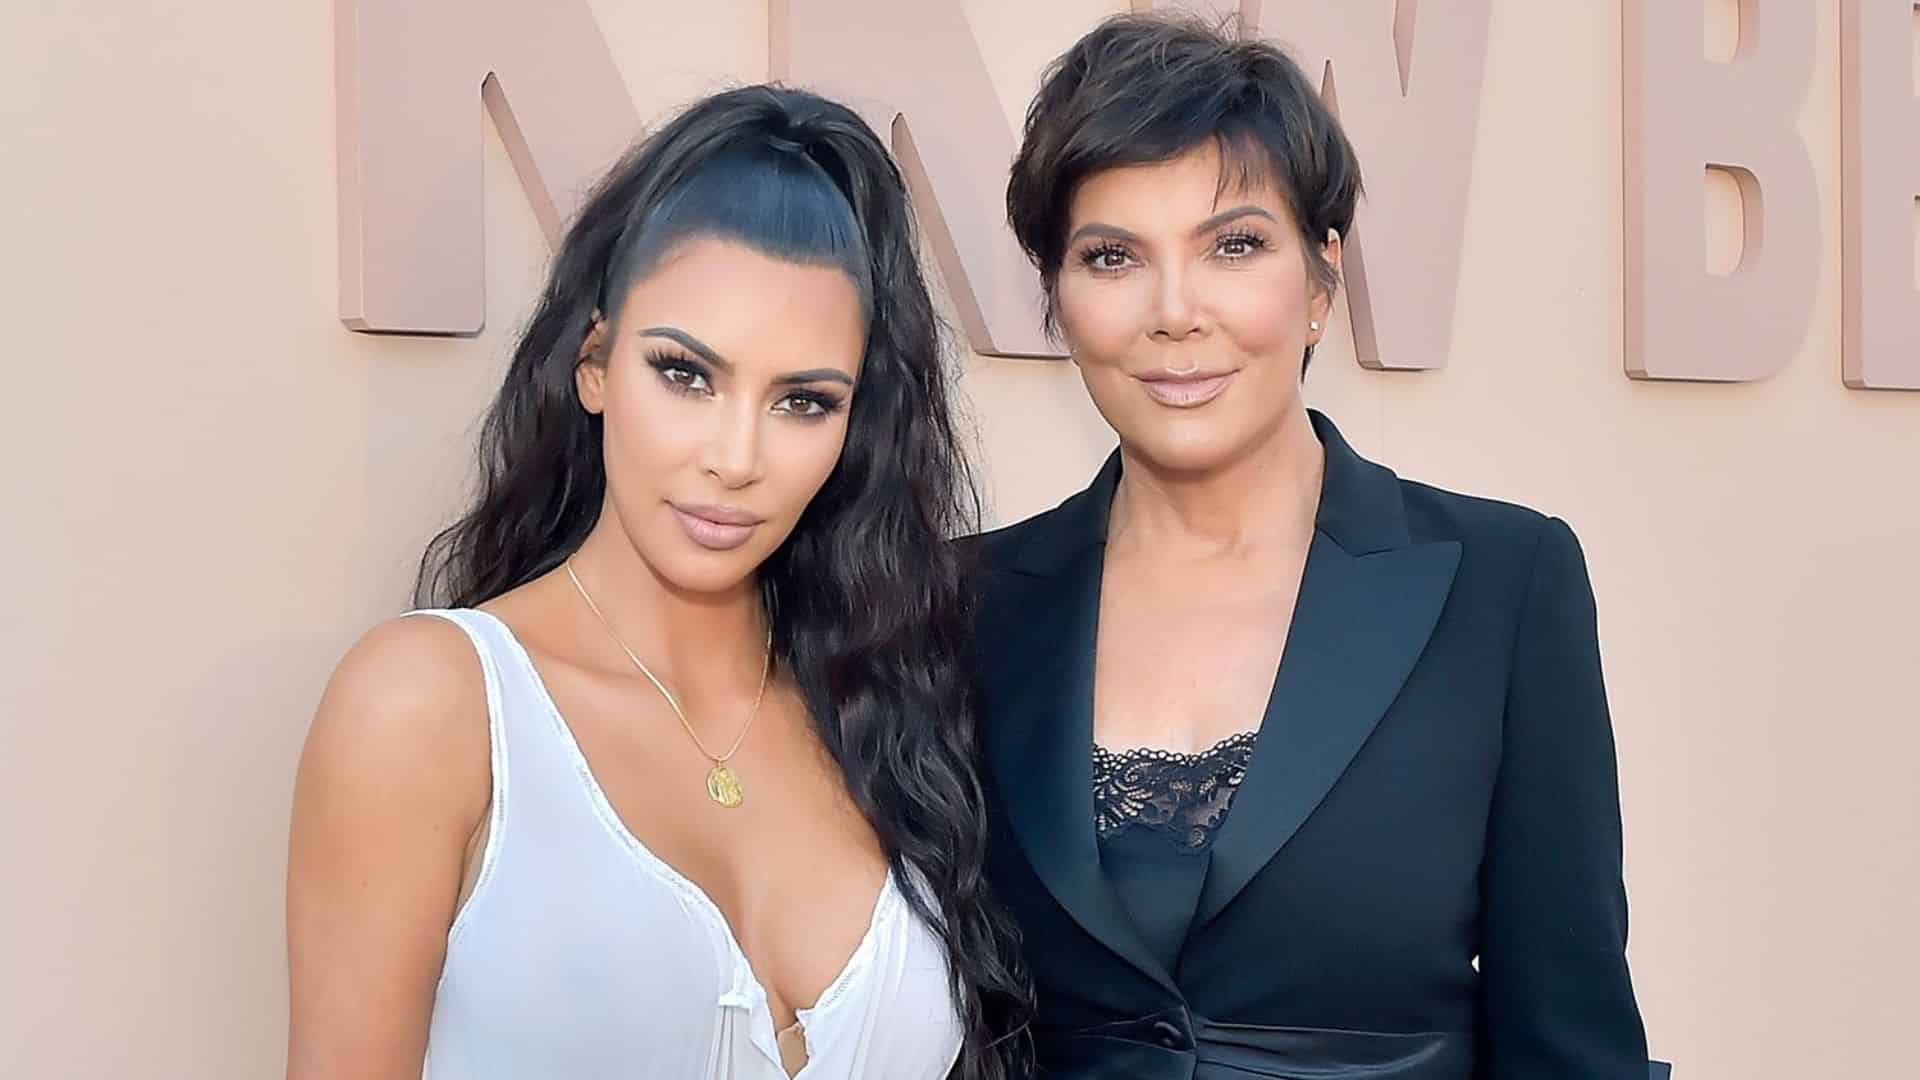 Kim Kardashian : la star vient de perdre un membre de sa famille